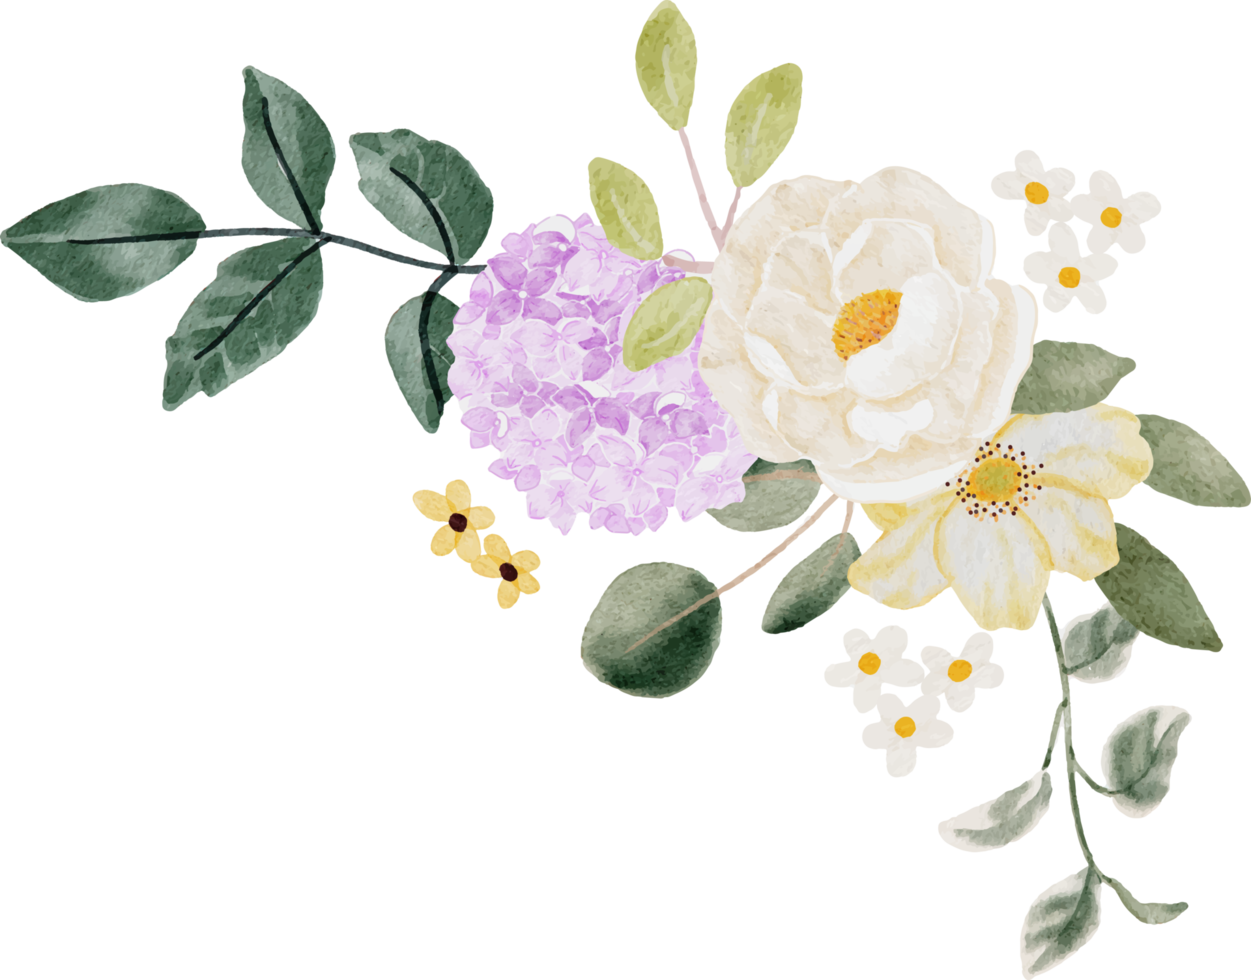 hortensia acuarela y ramo de flores silvestres png